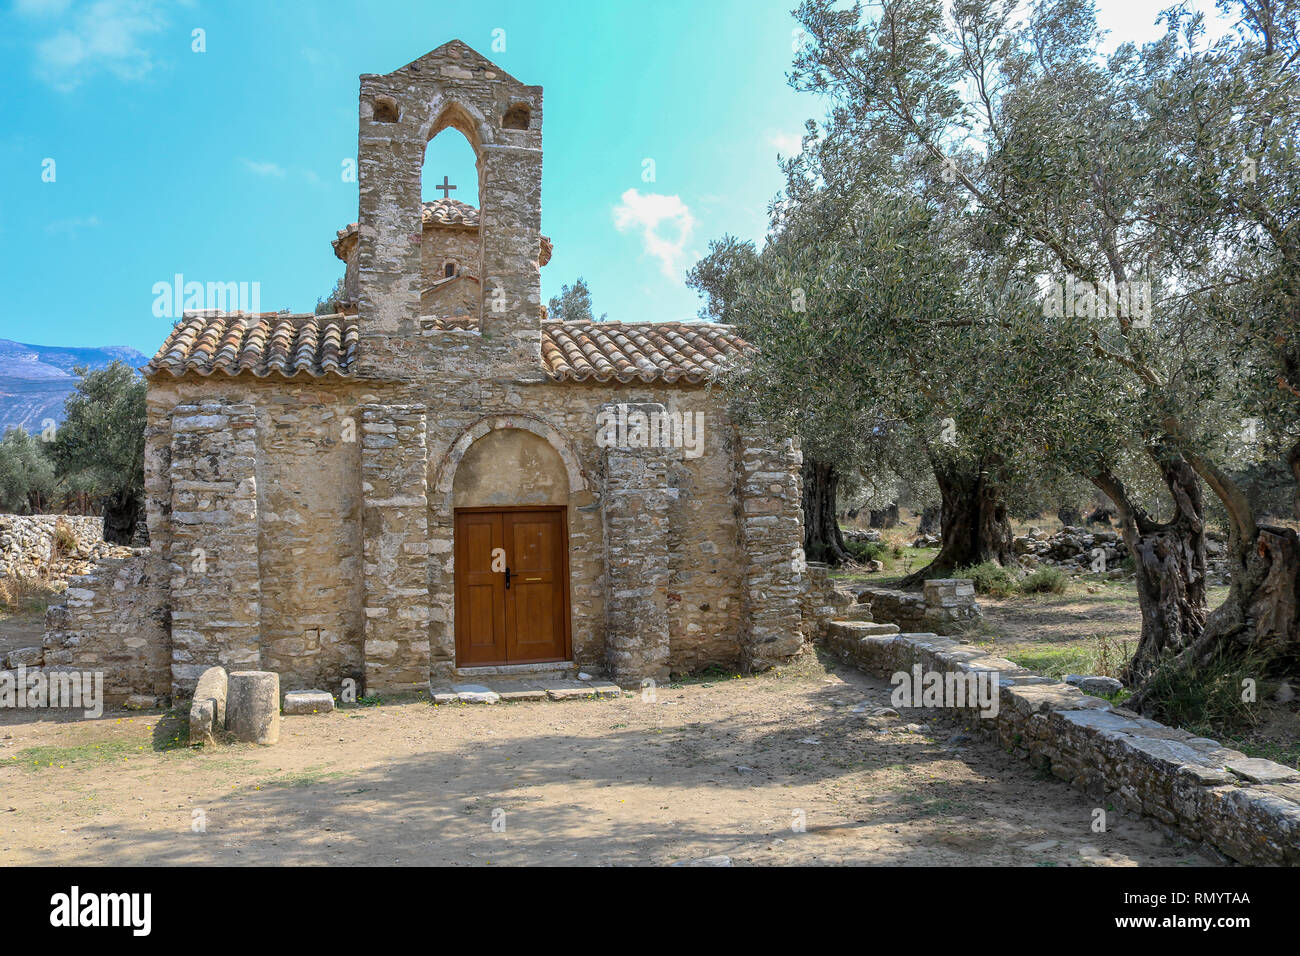 Byzantine Church near Chalki, Naxos, Greece Stock Photo